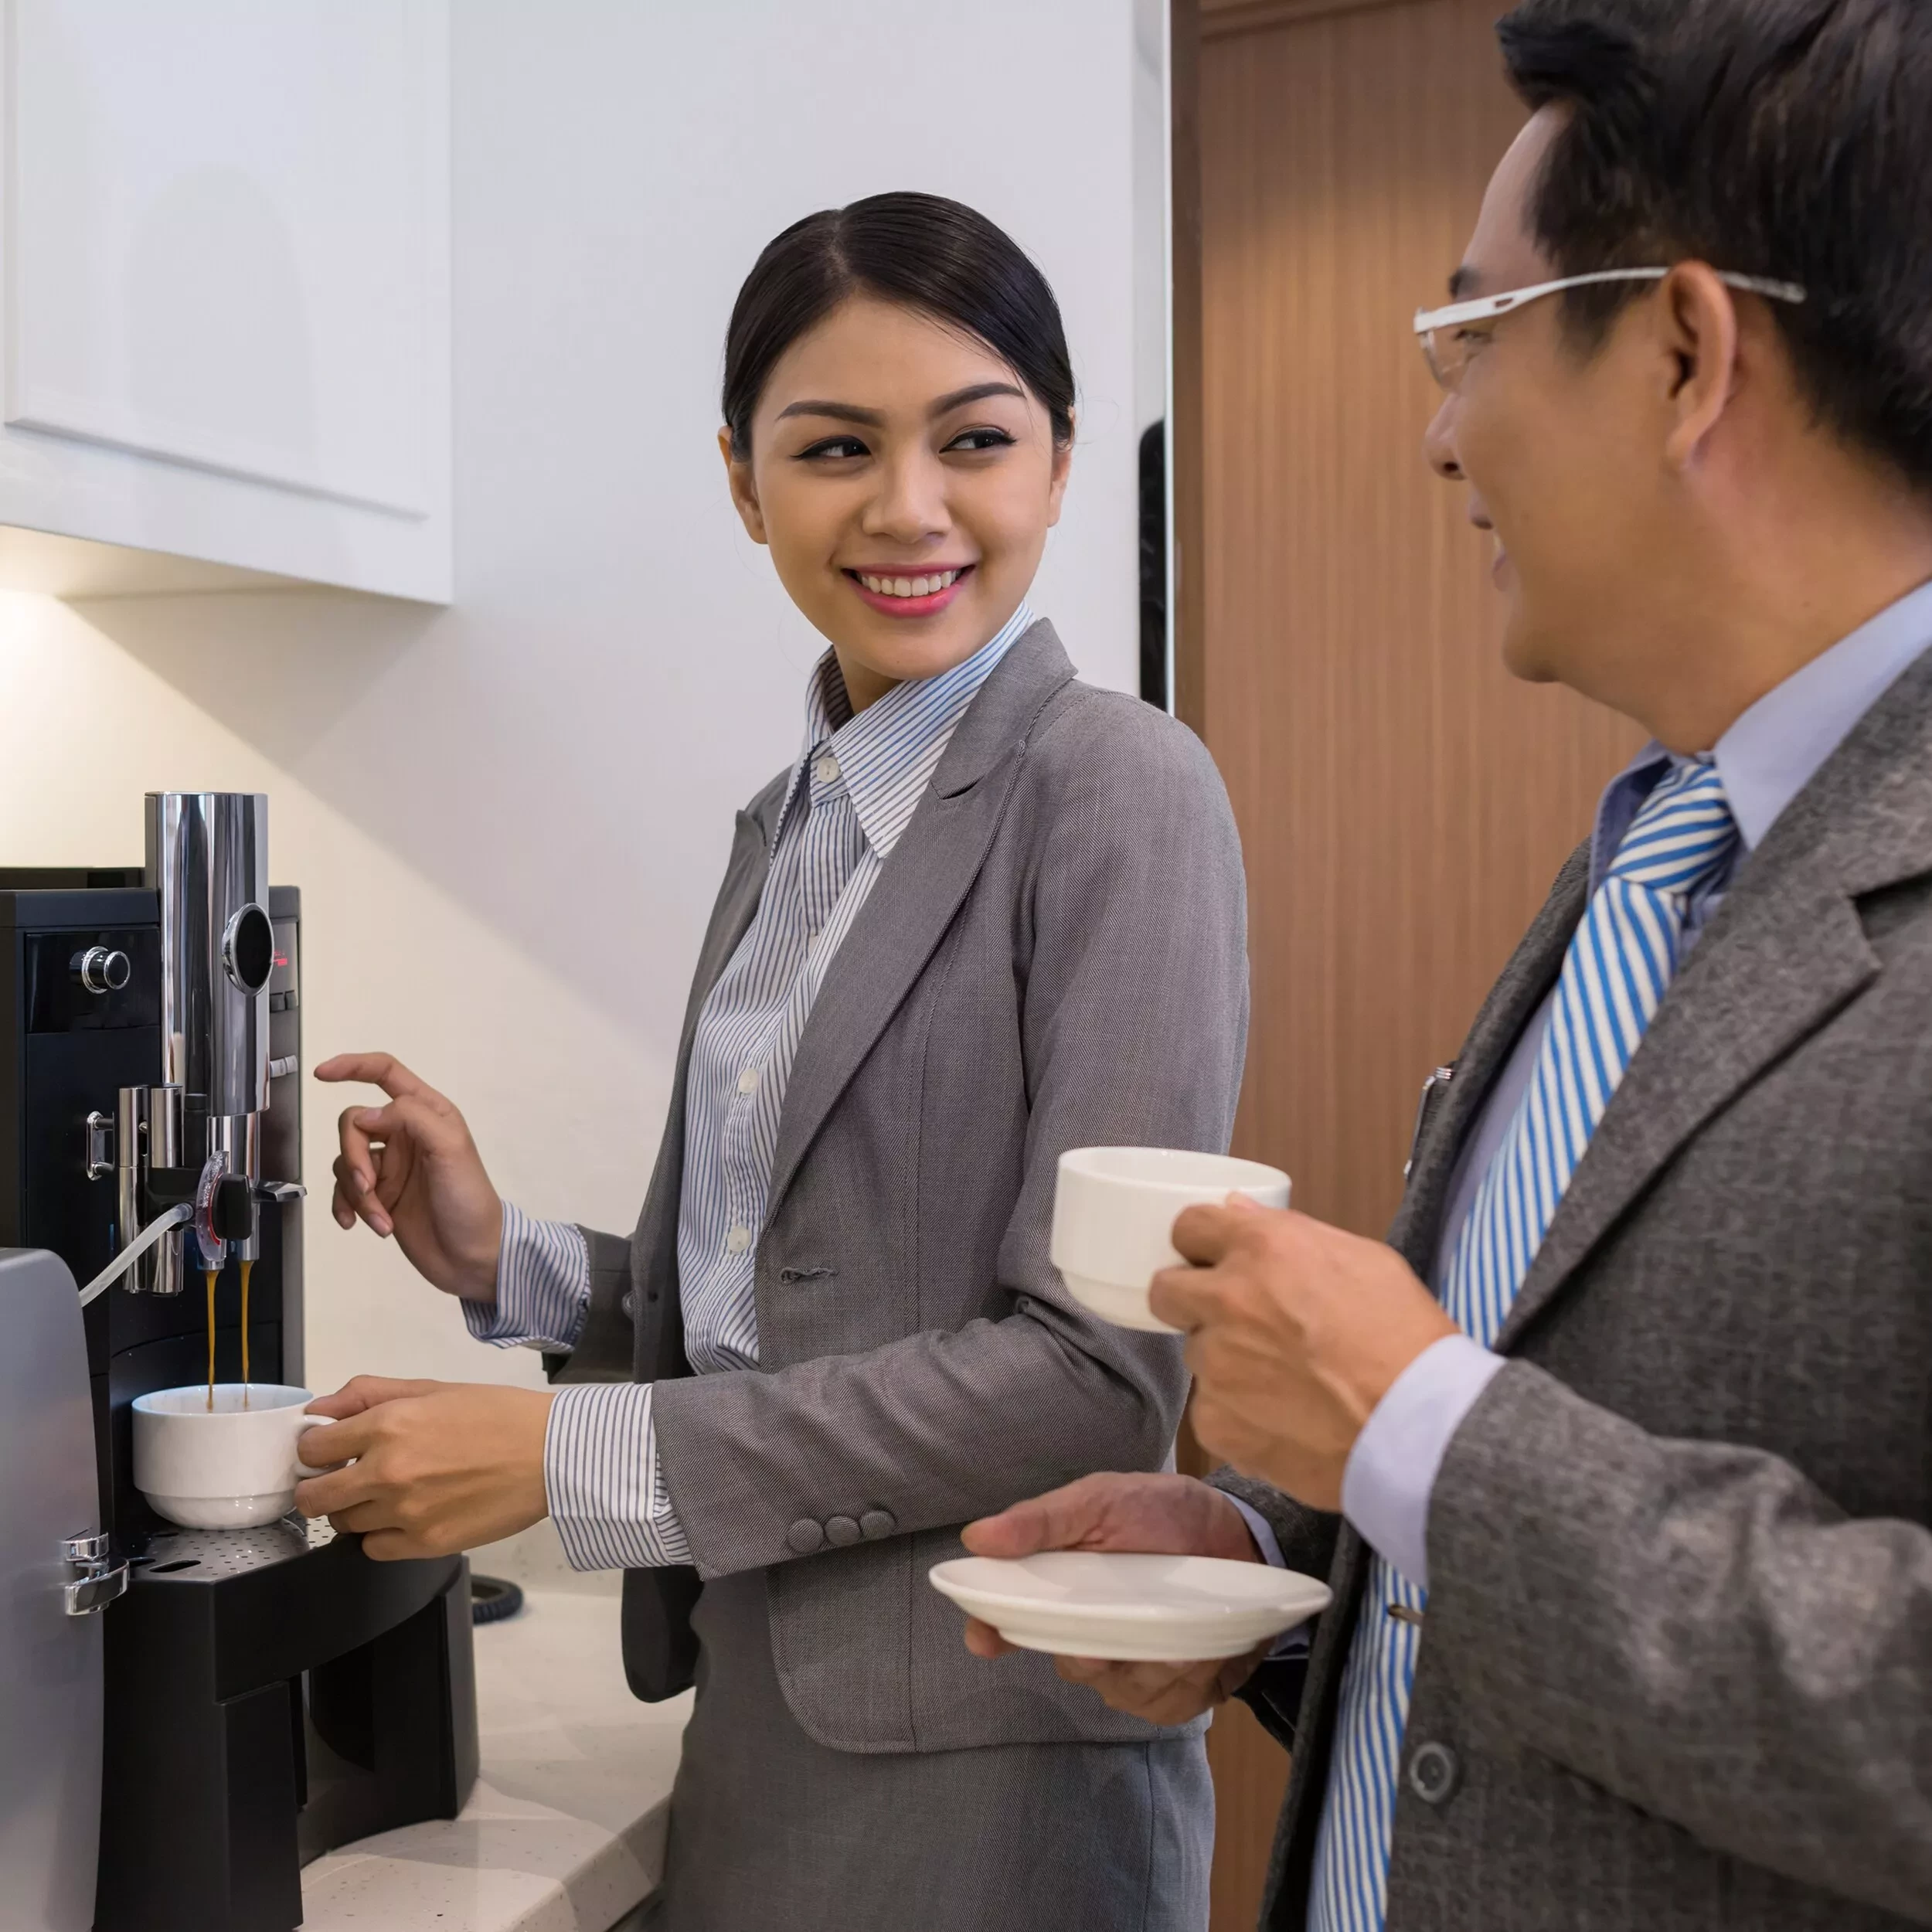 Увеличиваем продажи кофе и напитков в кафе – получаем дополнительный доход